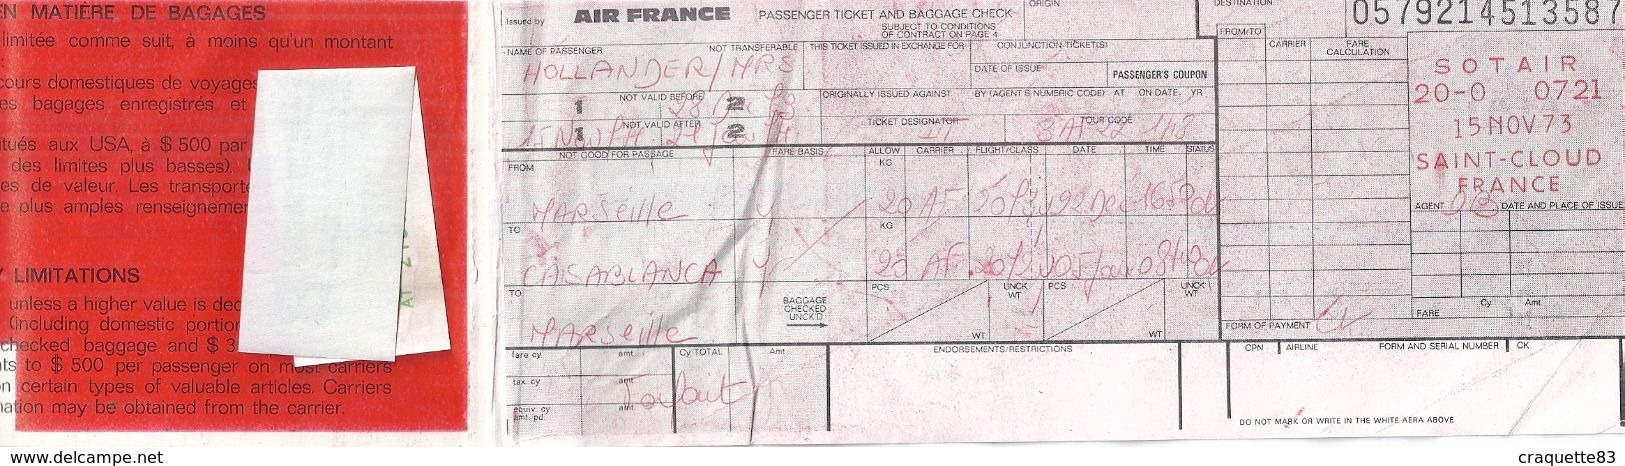 AIR FRANCE  MARSEILLE CASABLANCA  1973-BILLET DE PASSAGE ET BULLETIN DE BAGAGES - Wereld